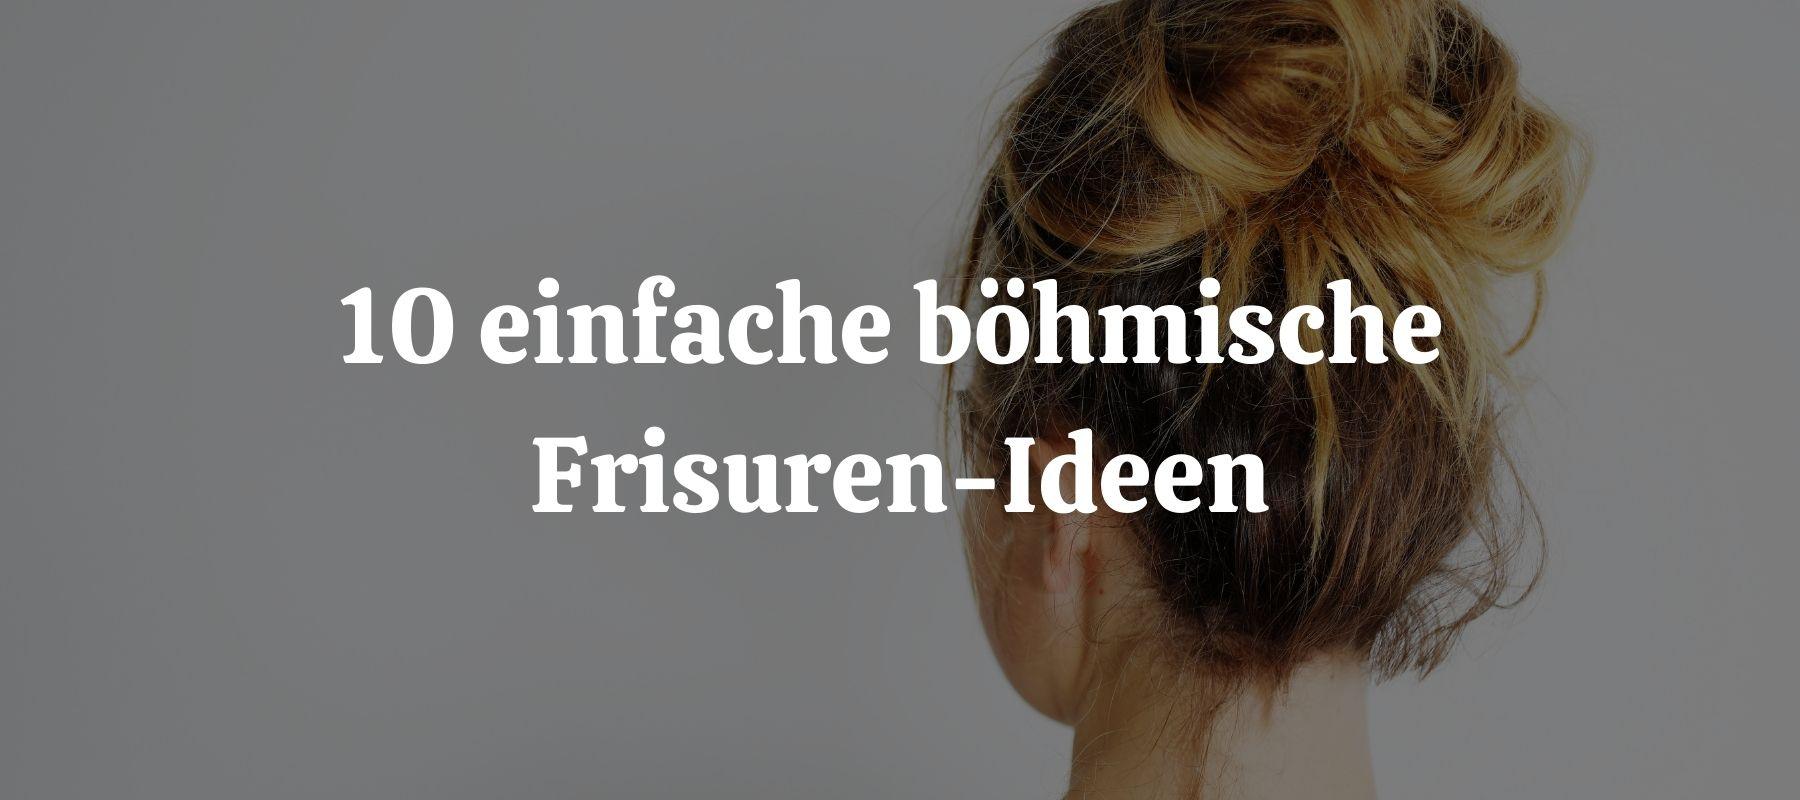 10 einfache böhmische Frisuren-Ideen